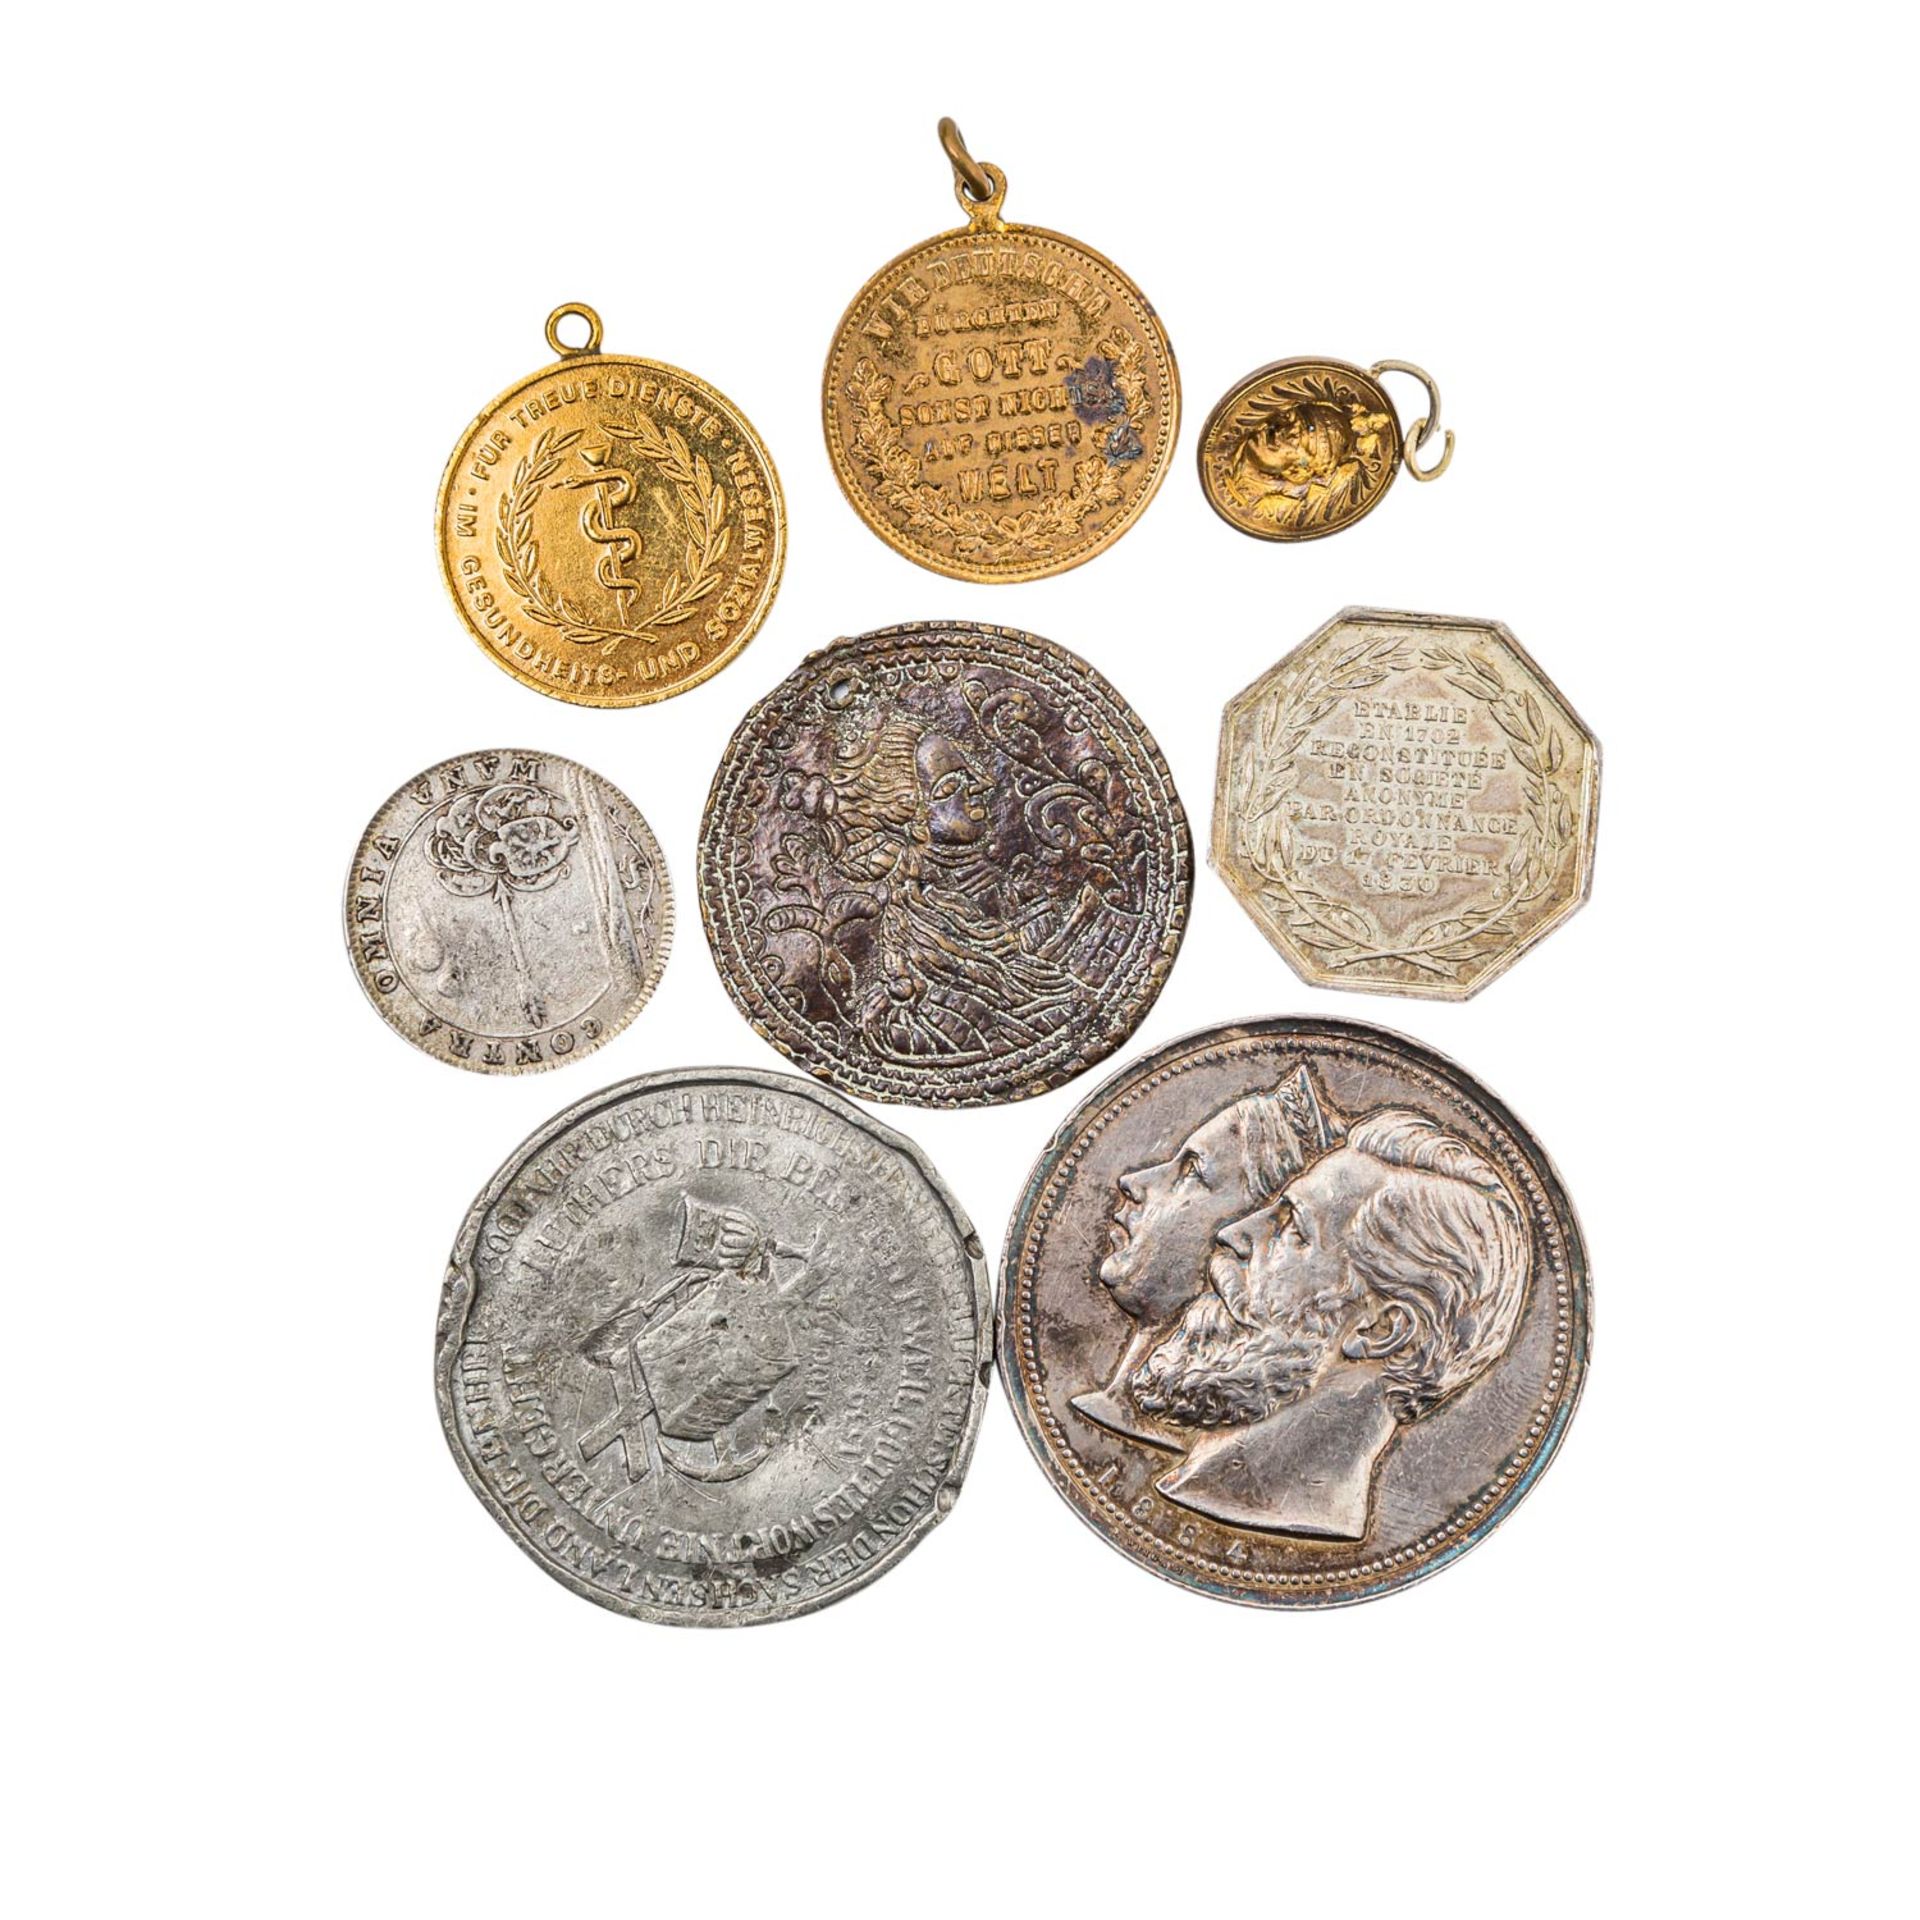 Interessantes Lot mit diversen Medaillen,Jetons und Weiterem, u.a. auch aus Deutschland 1933-1945 - Bild 2 aus 2